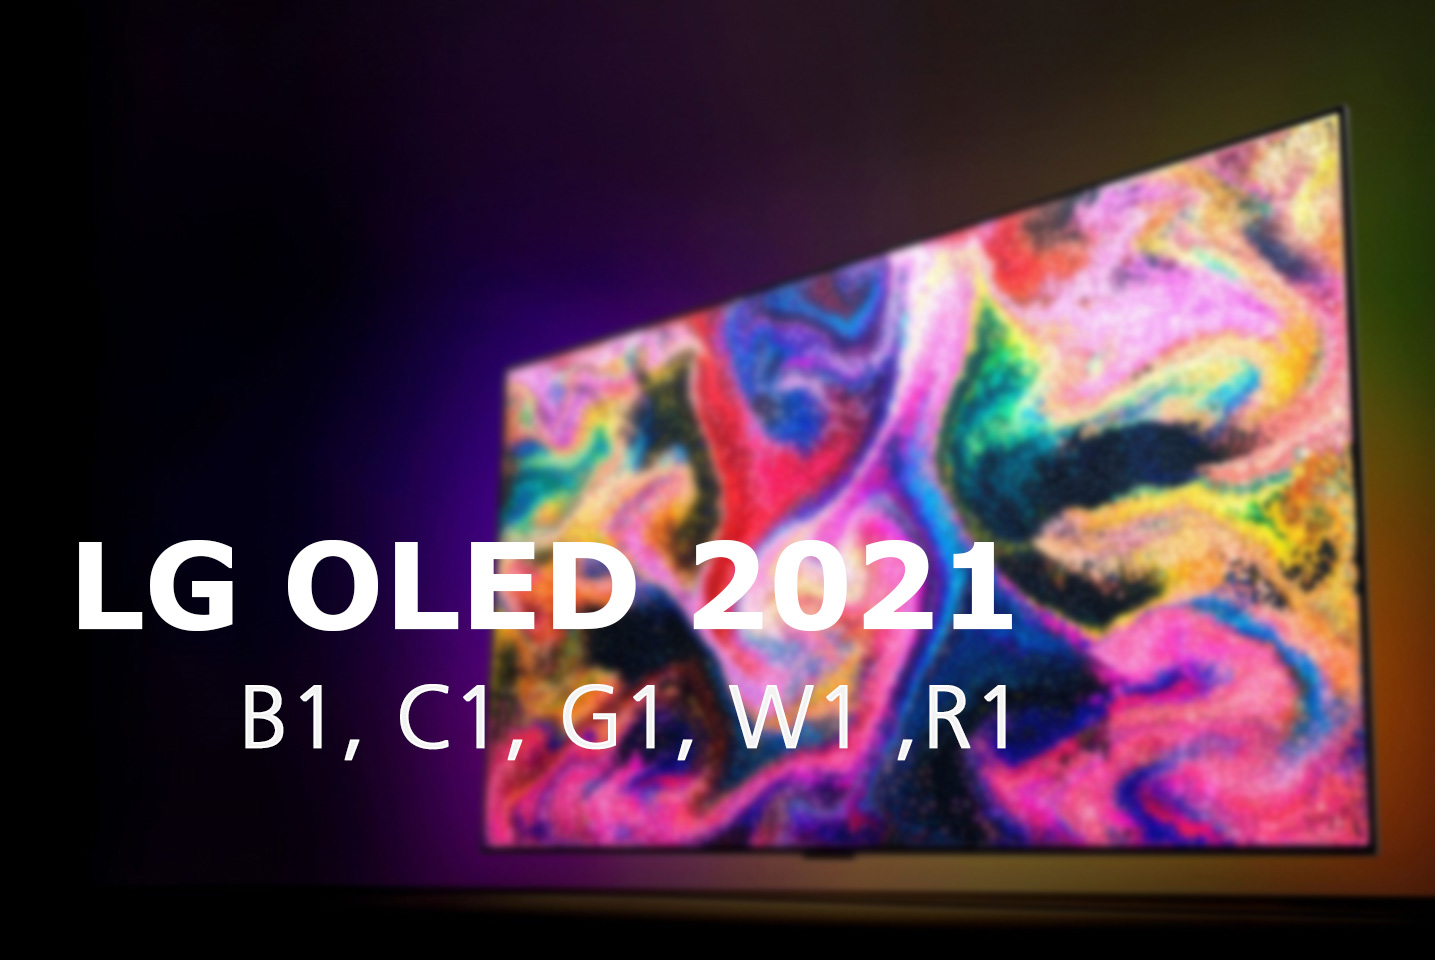 LG OLED TV 2021 B1 C1 G1 W1 news